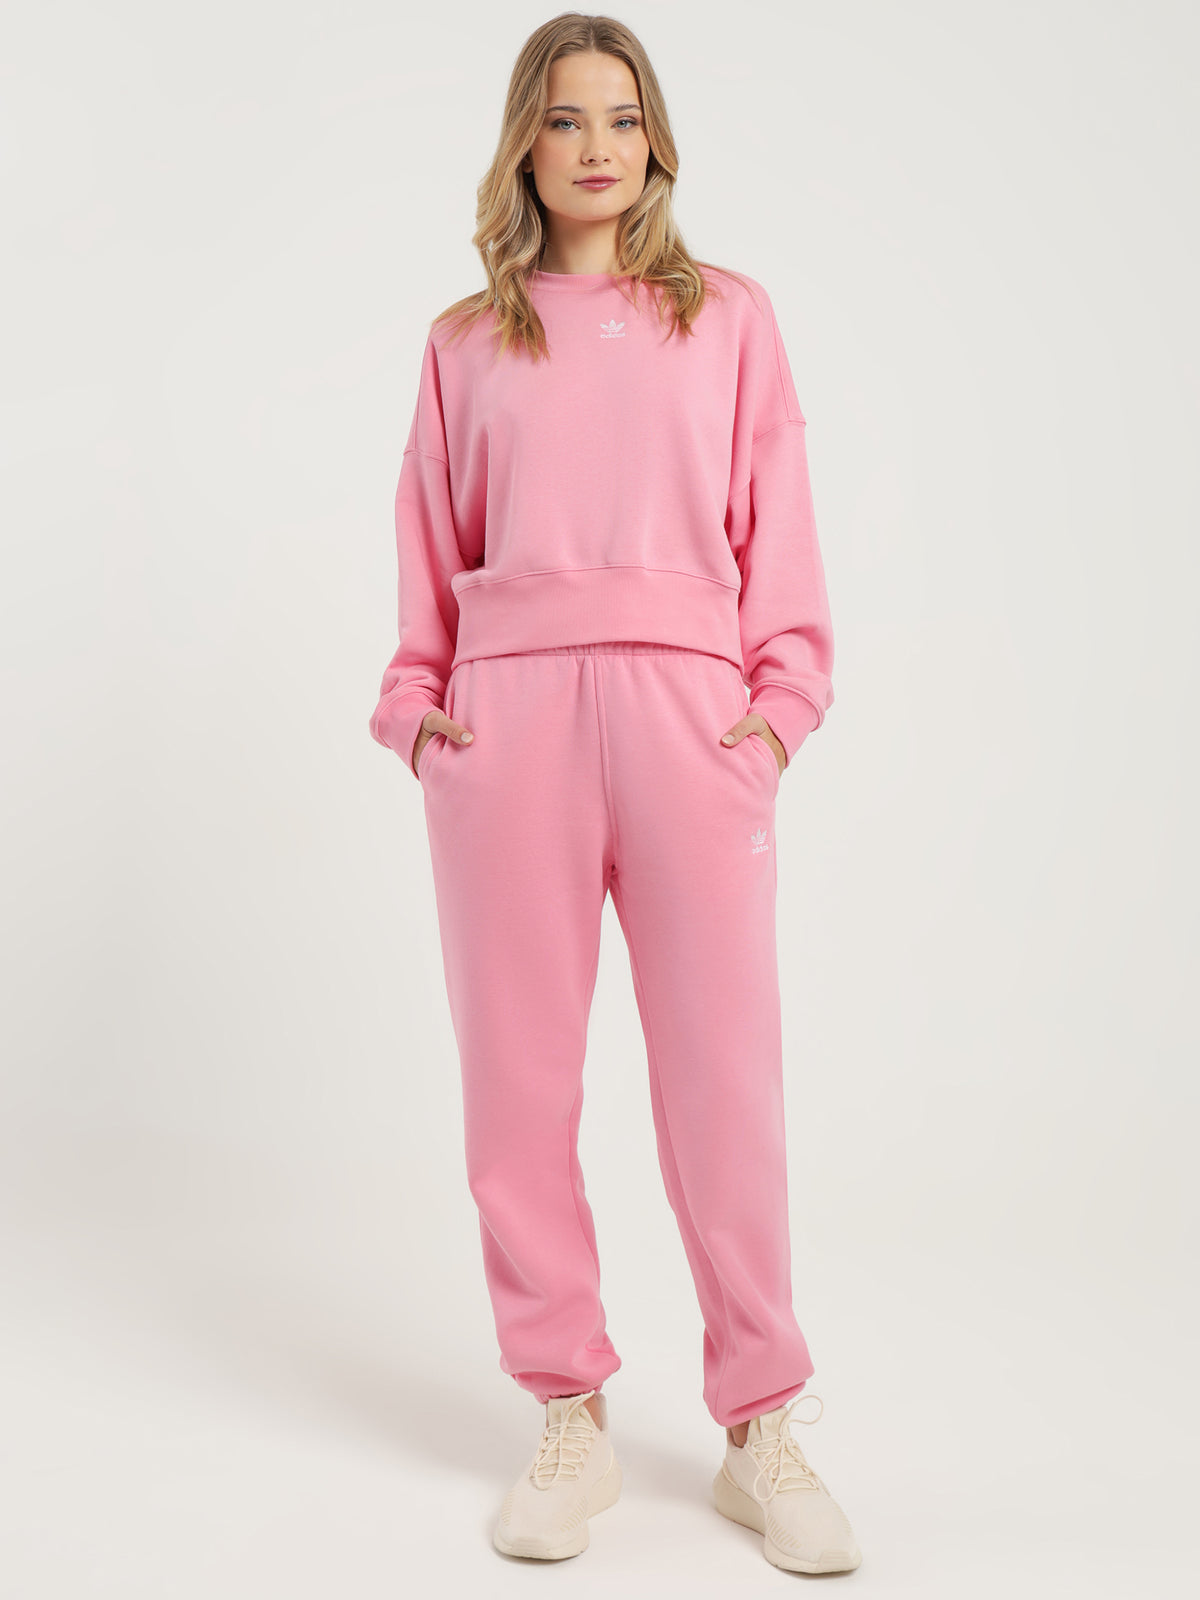 Adicolor Essentials Fleece Joggers in Bliss Pink